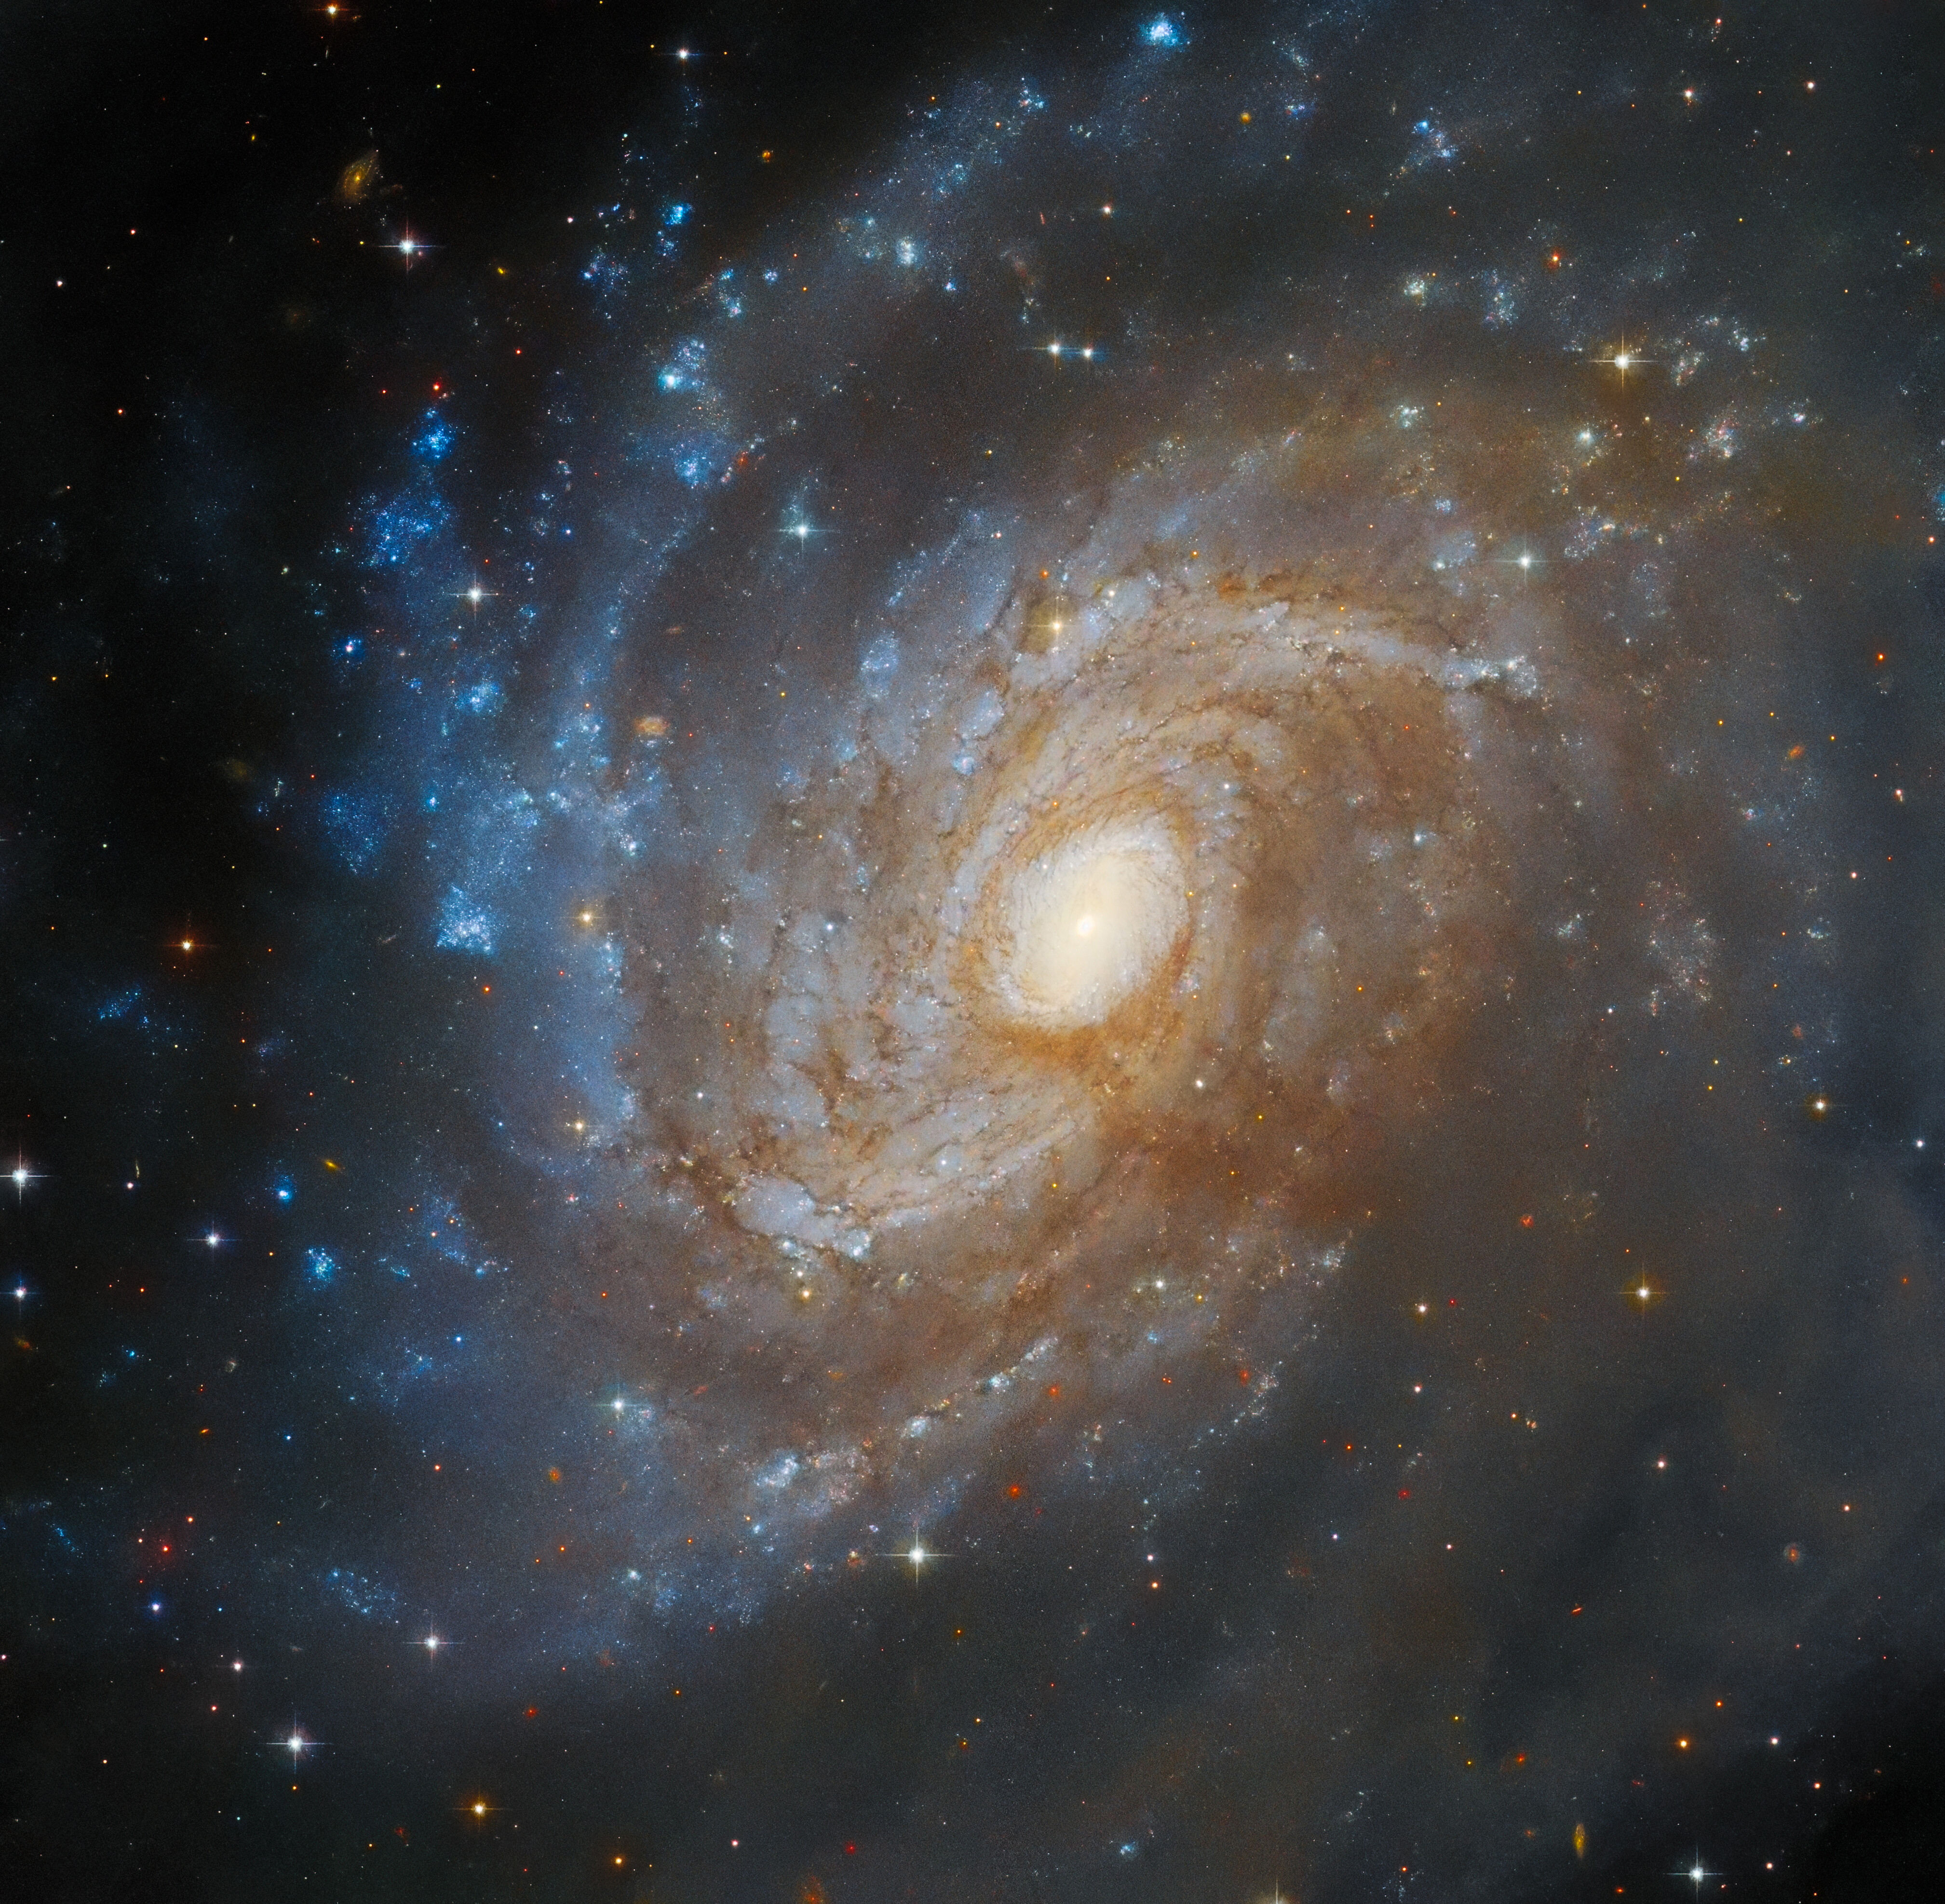 Una galaxia espiral vista casi de frente. El disco sostiene muchos brazos espirales fuertemente enrollados. Contienen pequeñas hebras de polvo rojizo, cerca del centro. En el lado izquierdo, el disco presenta parches brillantes de formación estelar. Todo el lado derecho, y parte del centro, está oscurecido por una gran nube de gas gris oscuro que cruza la imagen.]